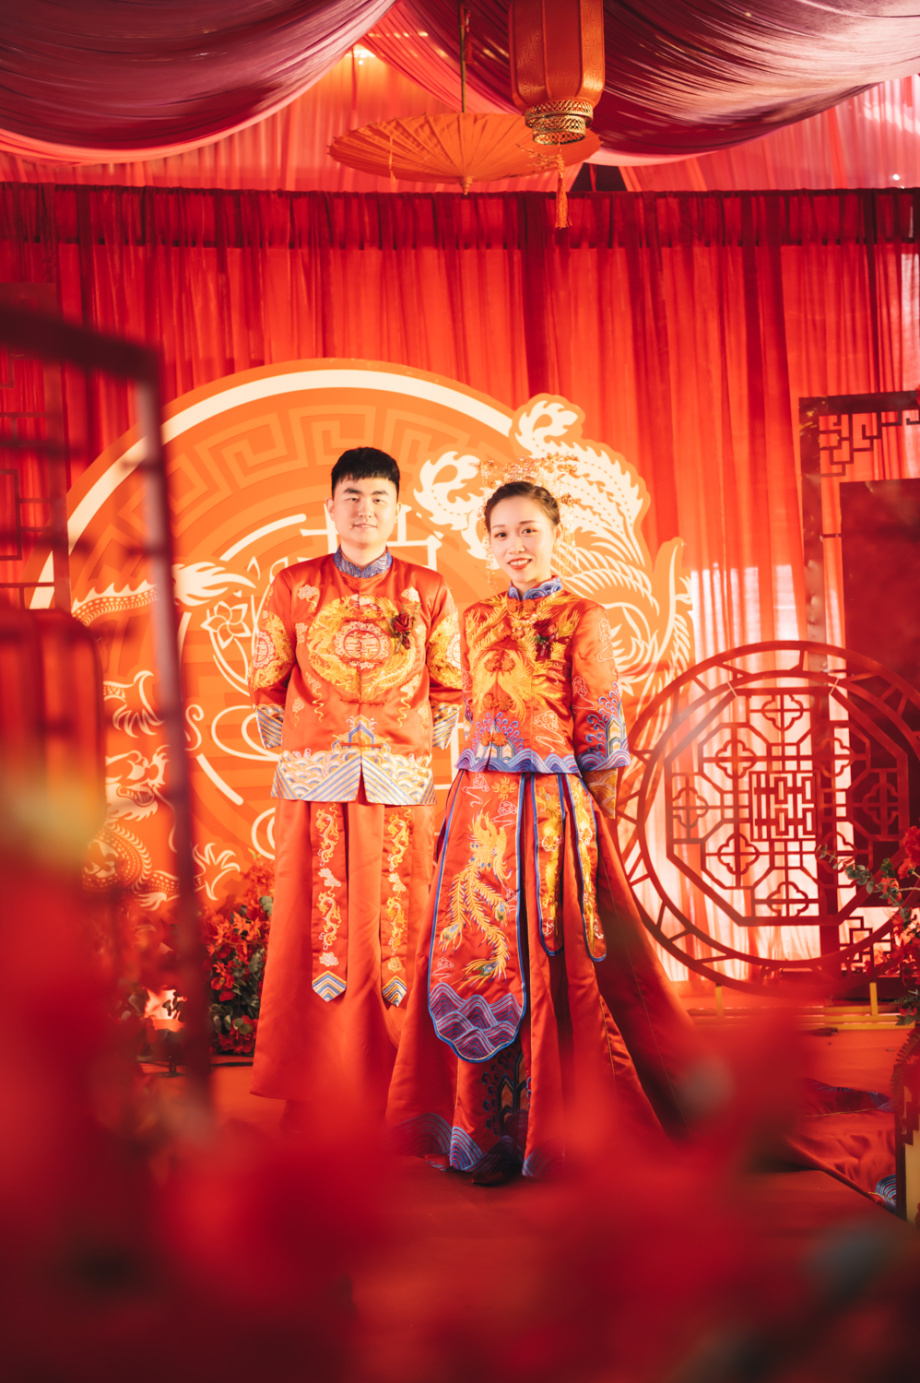 Chụp ảnh cưới phong cách Trung Quốc sẽ đem lại cho bạn một bộ ảnh độc đáo, lấy cảm hứng từ những nét đẹp của văn hóa và truyền thống Trung Quốc. Bạn và đối tác sẽ trở nên sang trọng và quý phái hơn với những bộ trang phục truyền thống đậm chất Tàu khựa, khiến bất kỳ ai nhìn vào cũng phải đánh giá cao sự tinh tế và sáng tạo của bộ ảnh này.